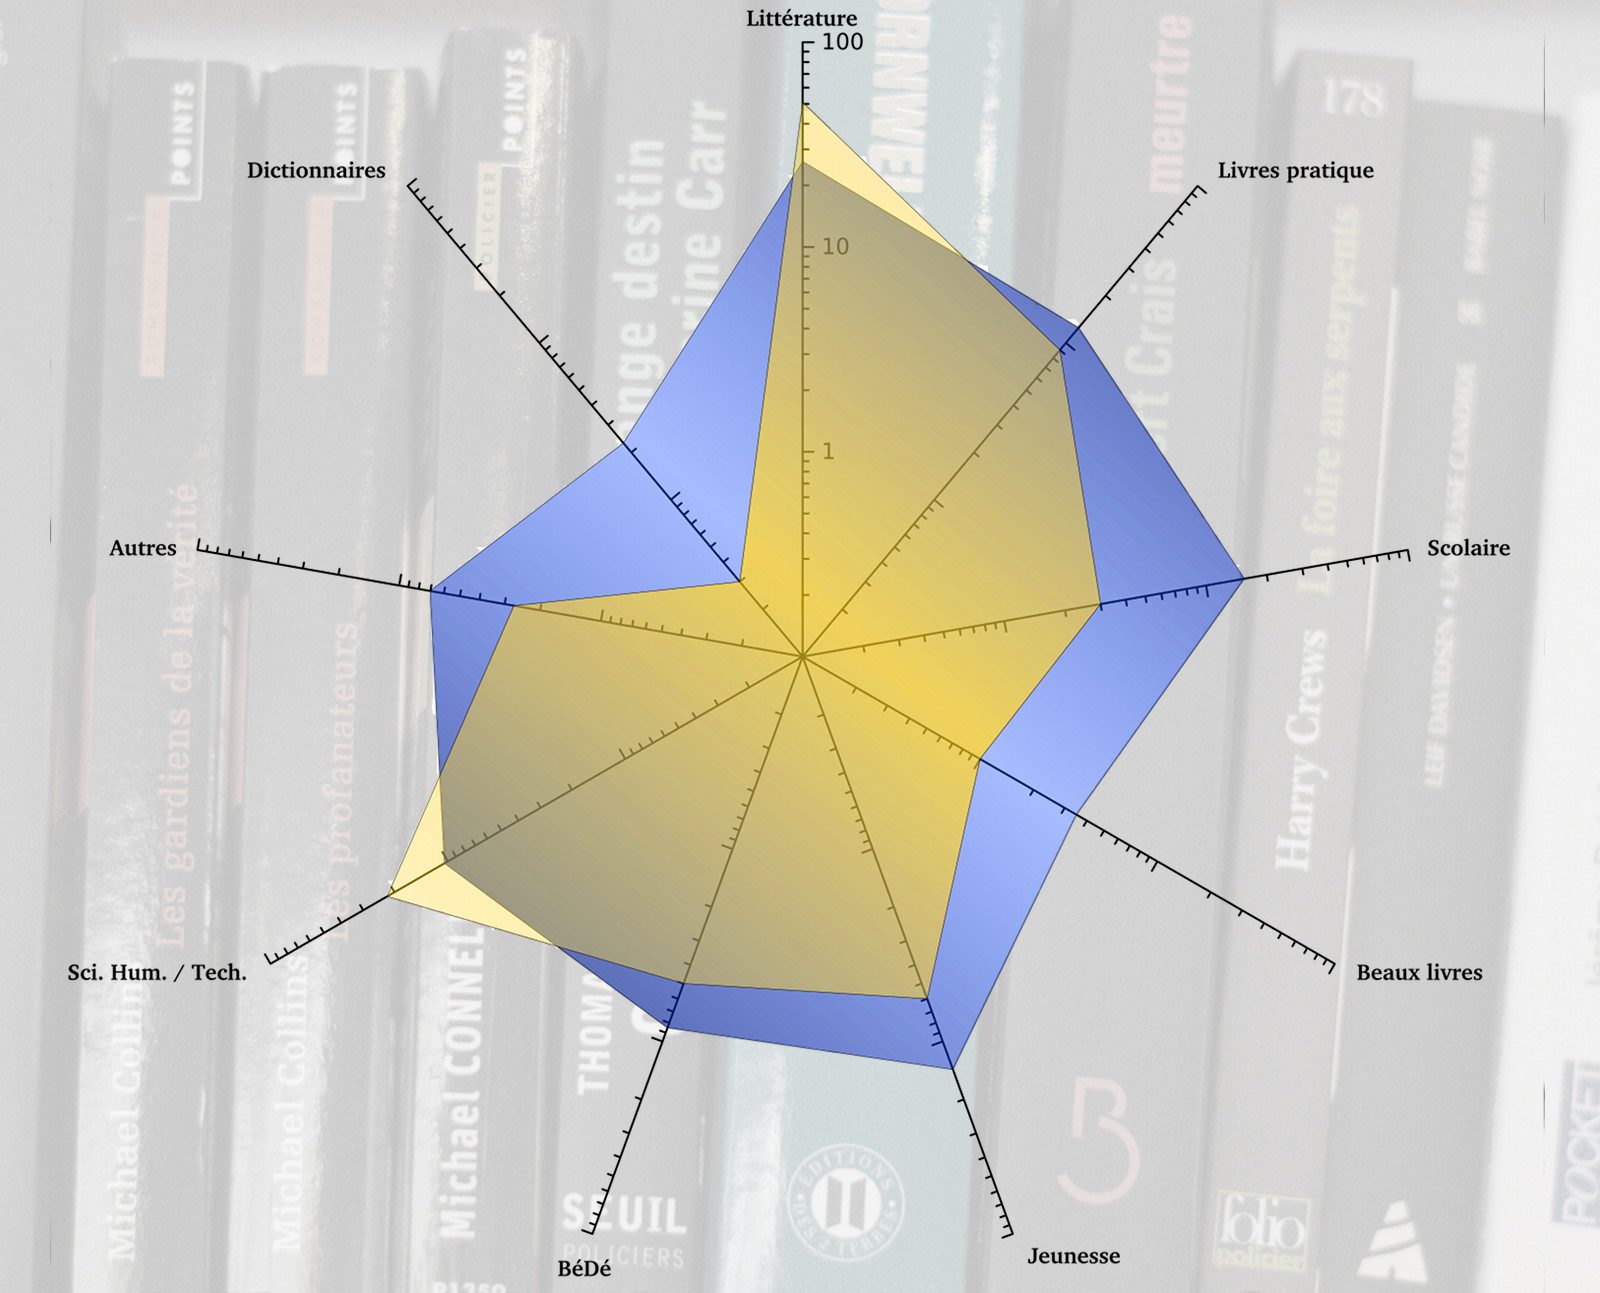 L’offre de livres numériques (en jaune) ne recouvre pas la demande générale de livres (en bleu). Les différences sont atténuées par l’échelle logarithmique (en %).